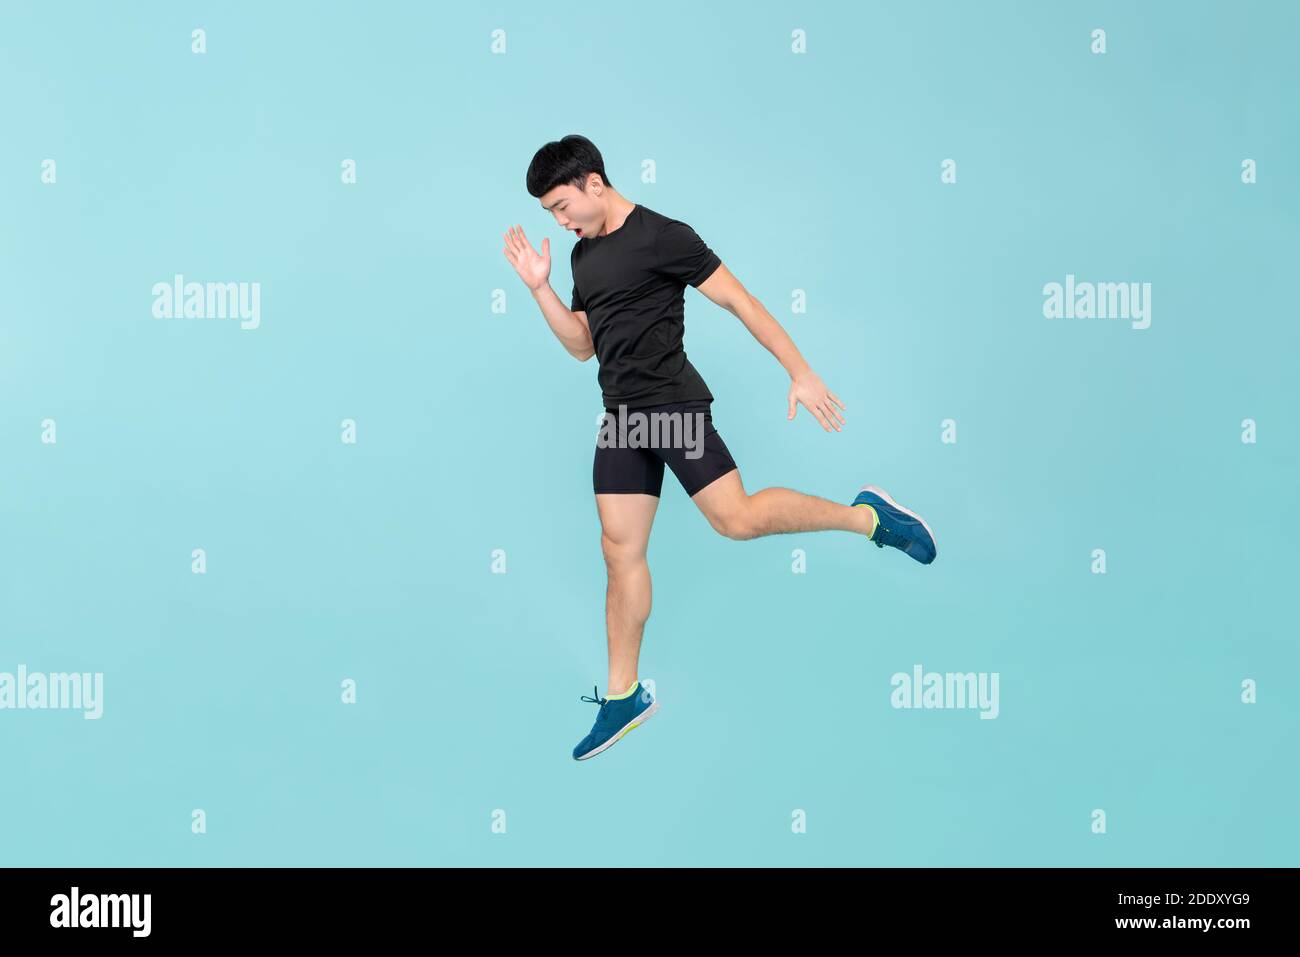 Cuerpo lleno de joven atleta energético asiático salto en fondo de estudio azul claro Foto de stock